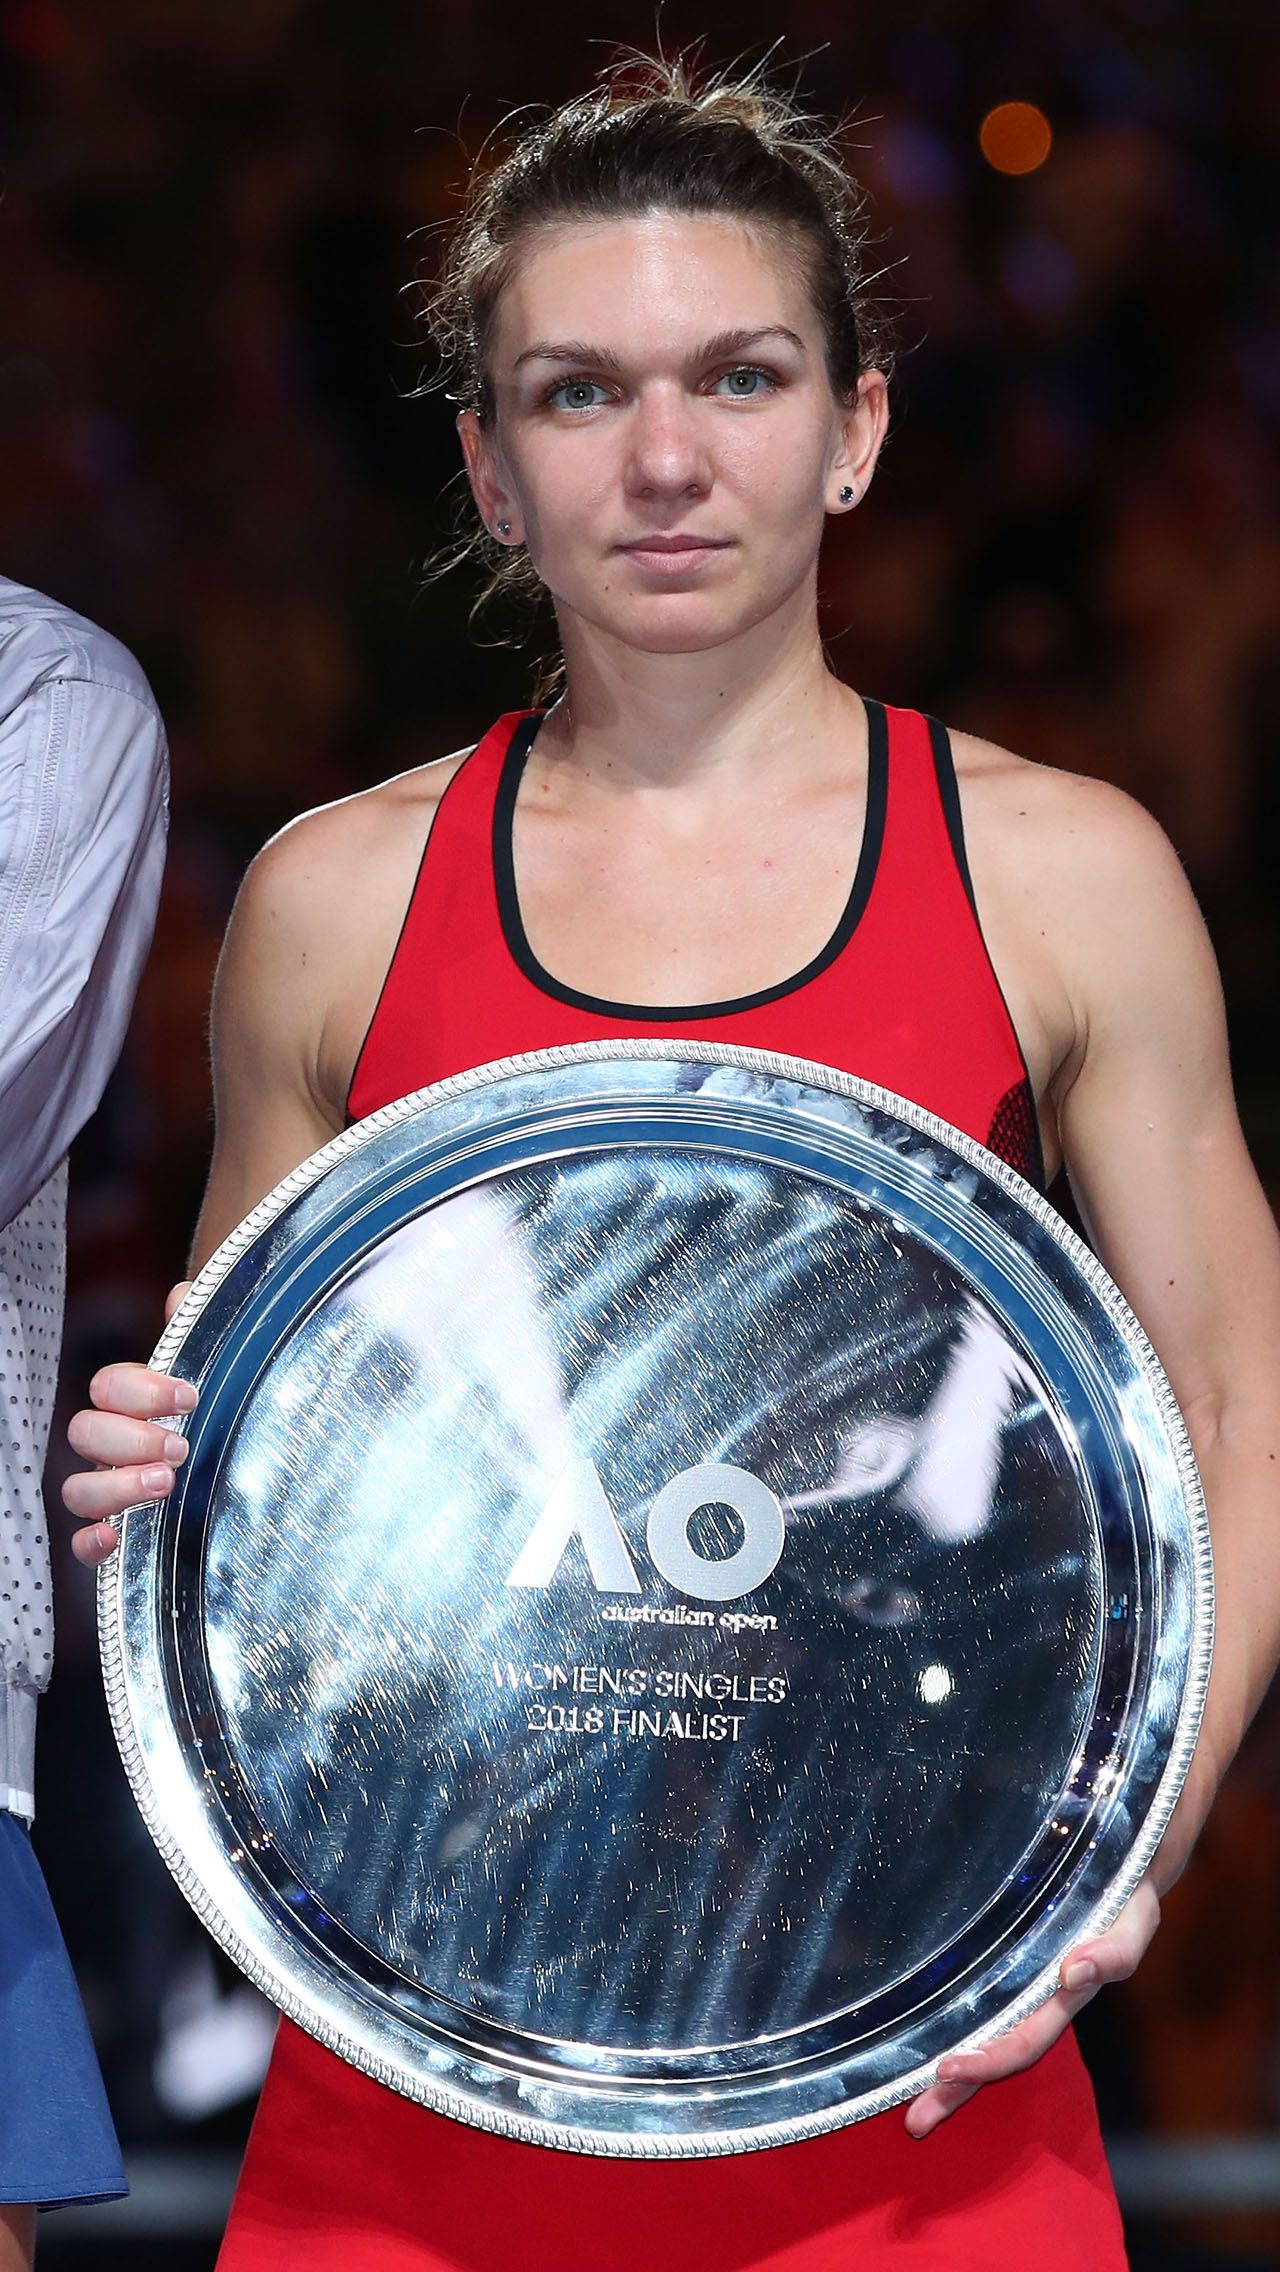 Высшее достижение Халеп на Australian Open – выход в финал в 2018 году. Тогда она проиграла Каролине Возняцки.